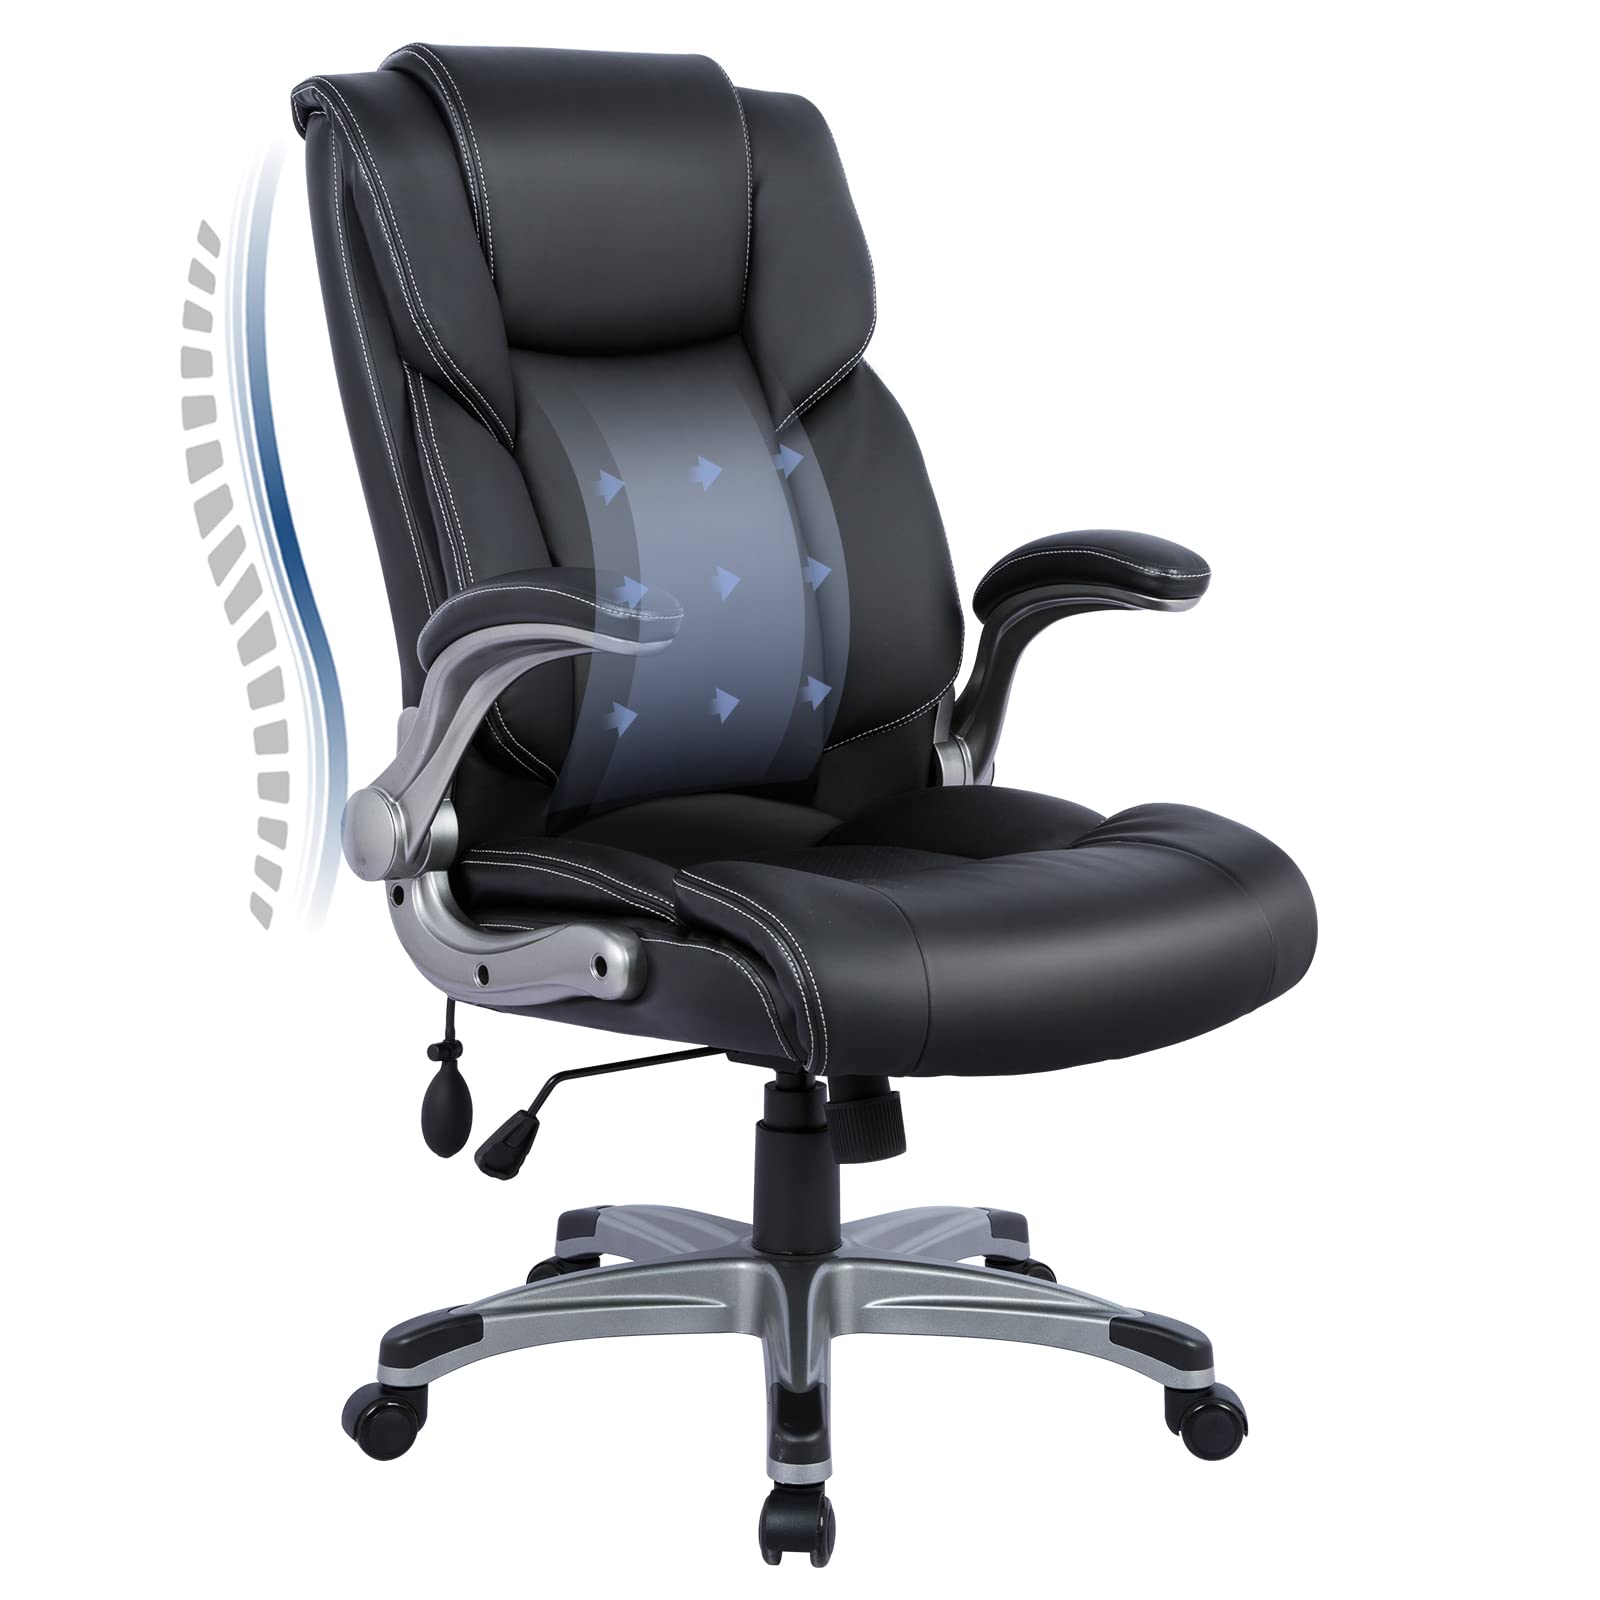 COLAMY Офисное кресло с высокой спинкой - Эргономичное кожаное кресло для домашнего компьютера